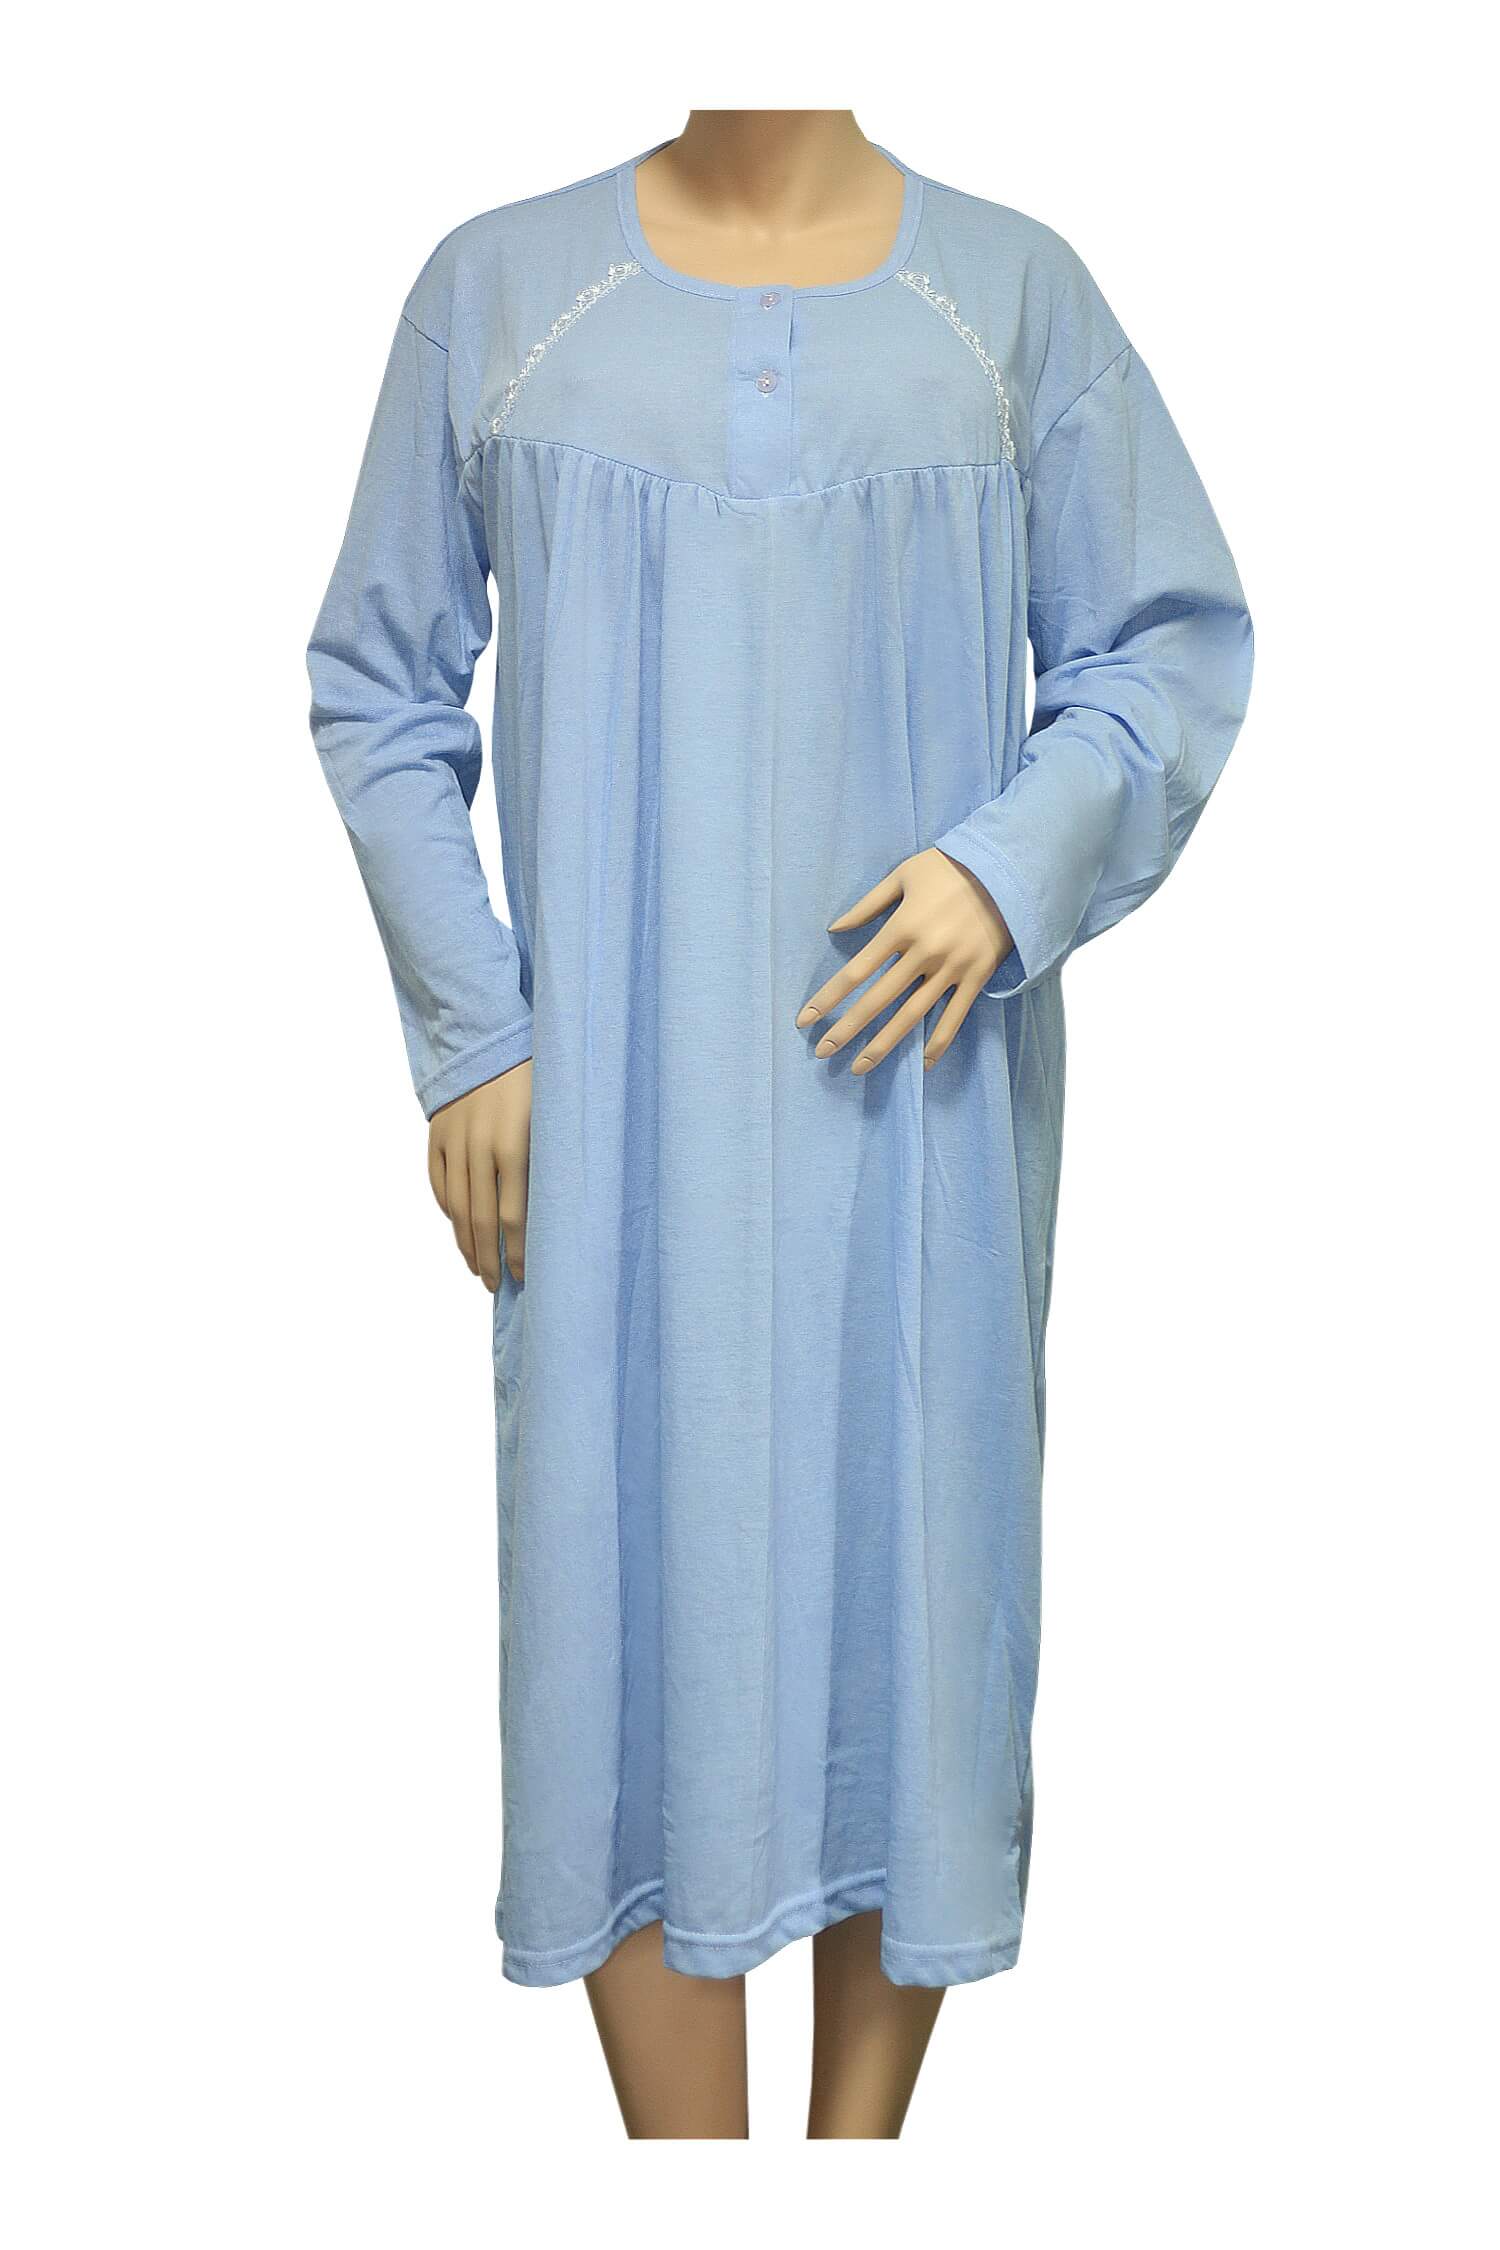 Otka bavlněná noční košile 1007 XXL modrá